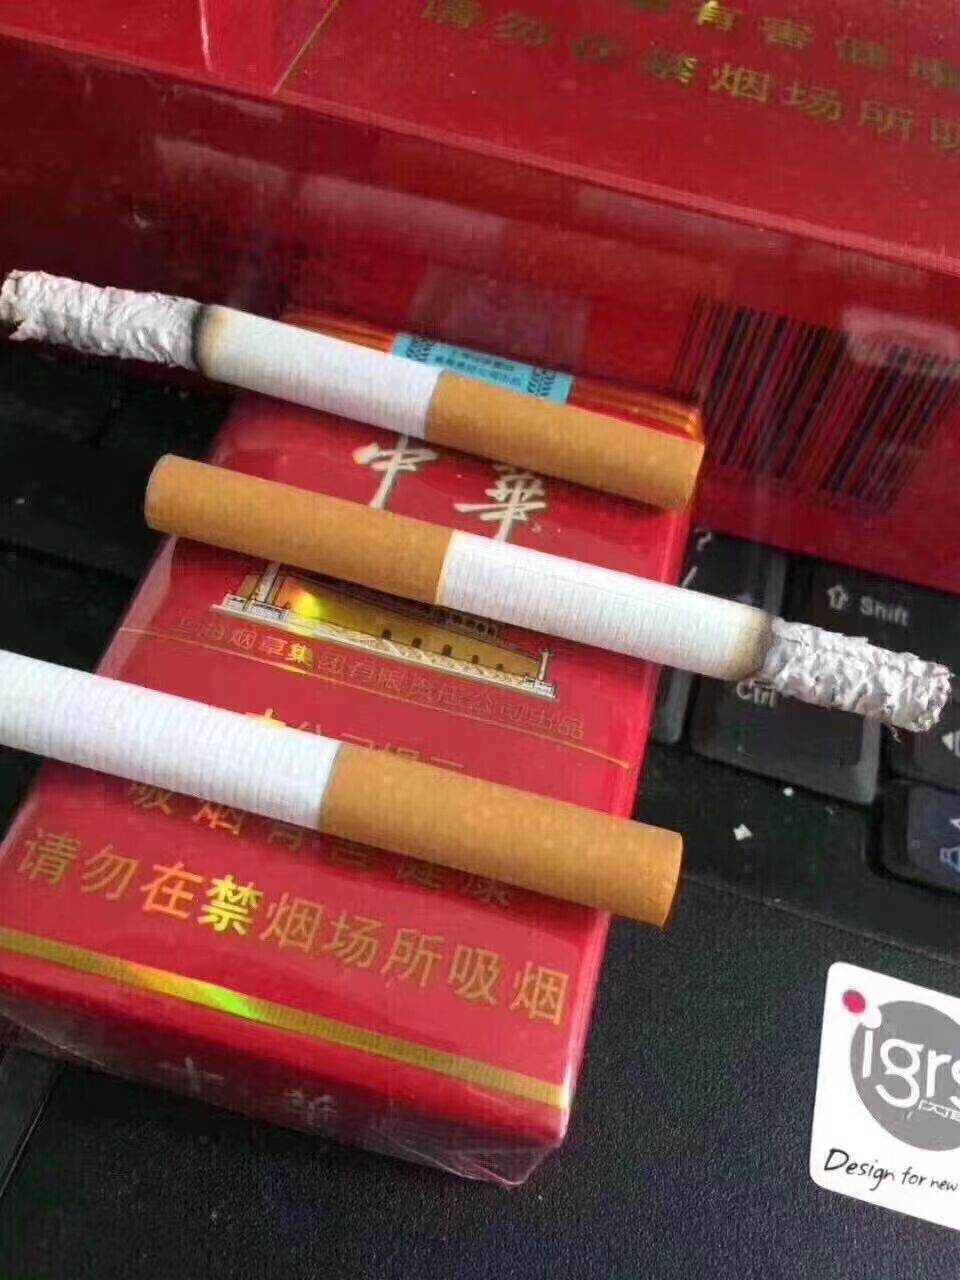 这是第6张越南出口外烟广西越南代工烟正品香烟云霄国烟免税烟一手货源批发代理的货源图片